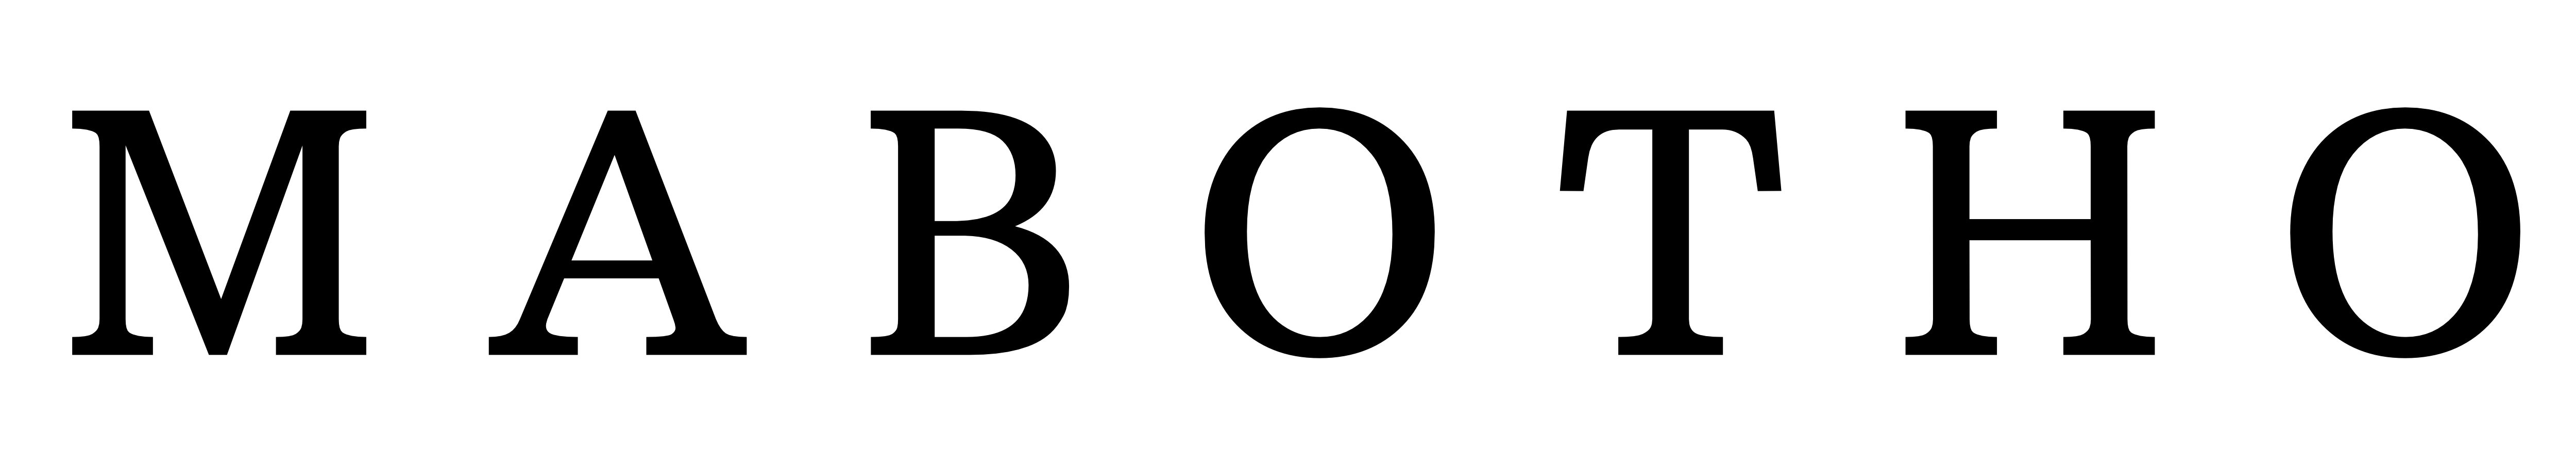 Mabotho Logo Black